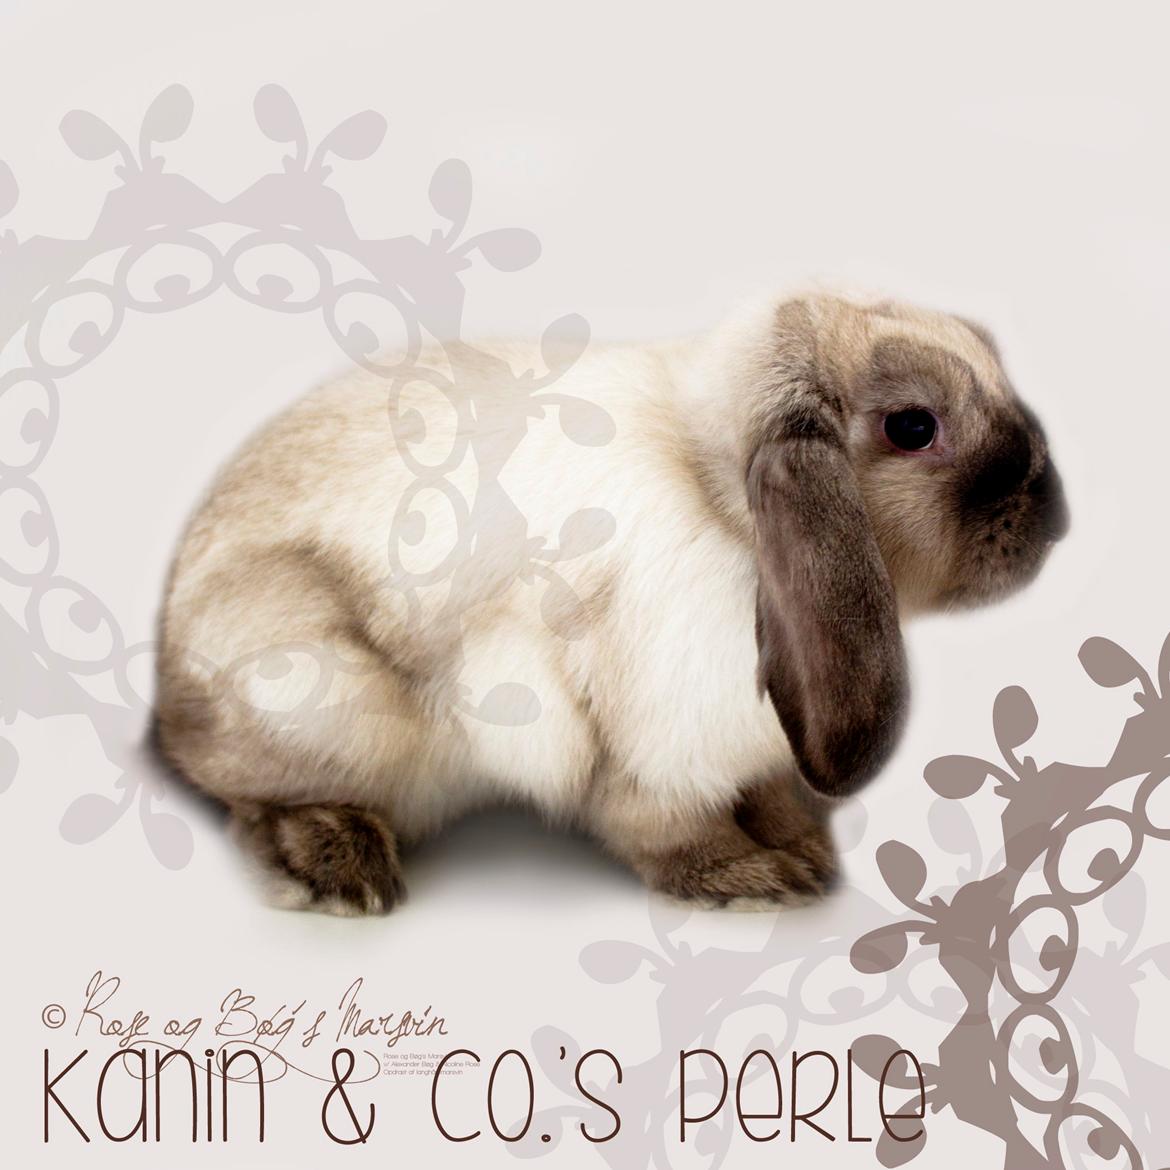 Kanin Kanin & Co.'s Perle - Kanin & Co.'s Perle <3 Smukke Perle er ved at få vinterpels. Den 9. oktober 2013 billede 34